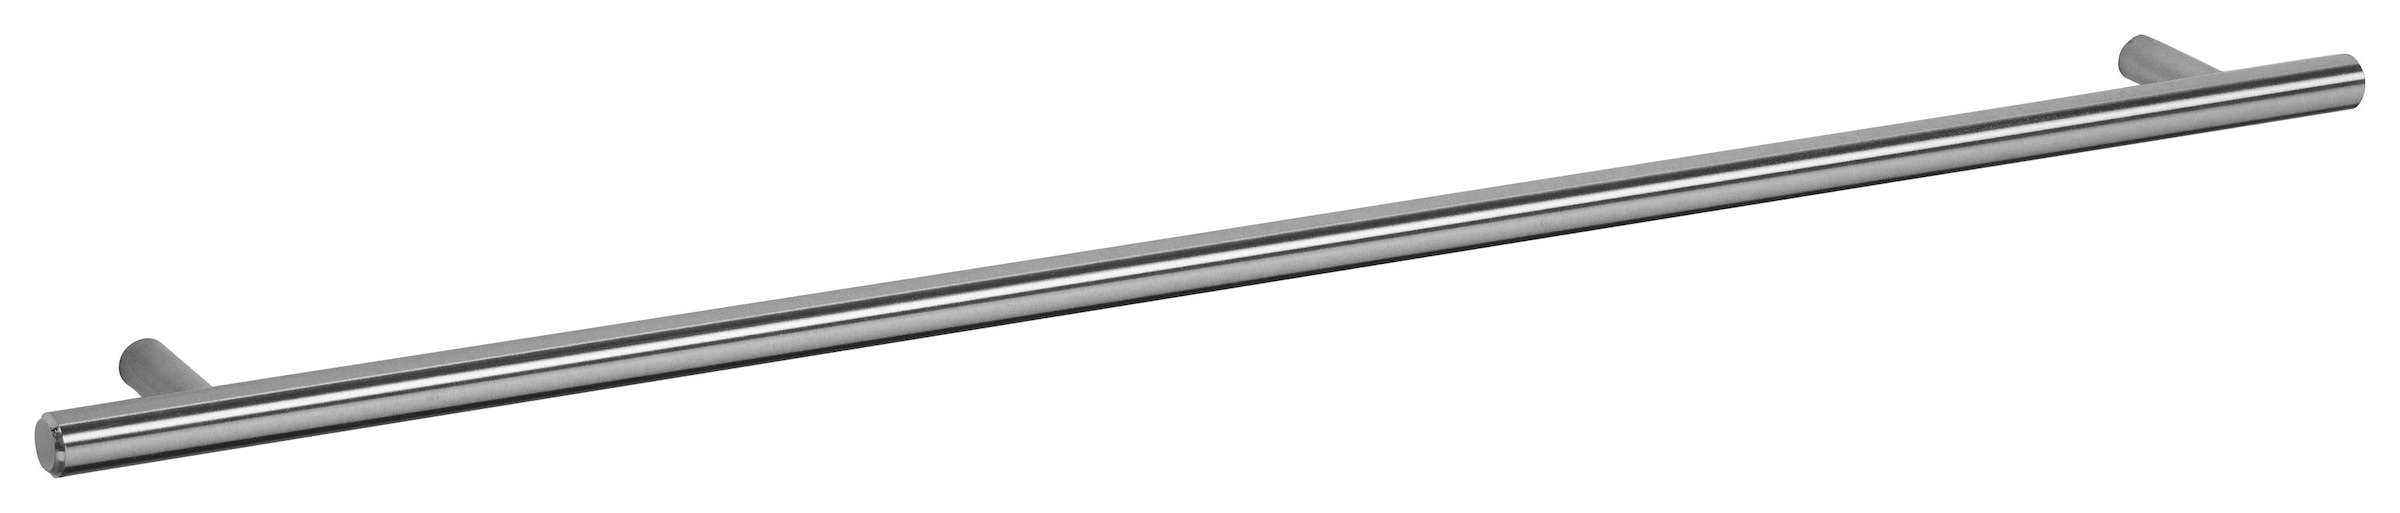 OPTIFIT Backofen/Kühlumbauschrank »Bern«, 60 cm breit, 176 cm hoch, höhenverstellbare Stellfüße, mit Metallgriff